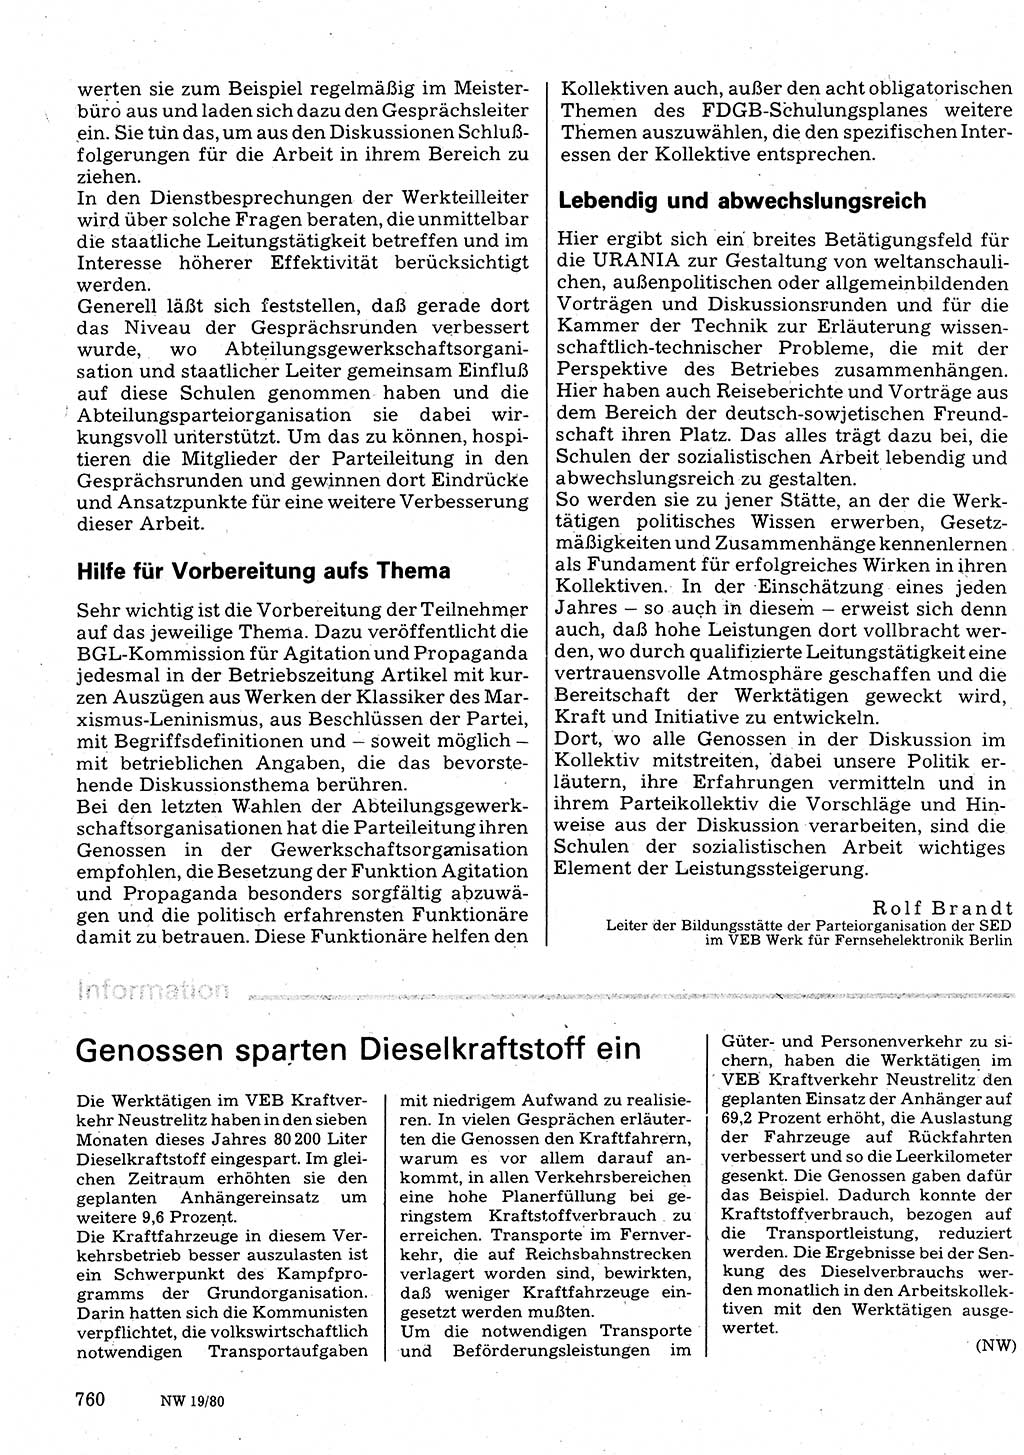 Neuer Weg (NW), Organ des Zentralkomitees (ZK) der SED (Sozialistische Einheitspartei Deutschlands) für Fragen des Parteilebens, 35. Jahrgang [Deutsche Demokratische Republik (DDR)] 1980, Seite 760 (NW ZK SED DDR 1980, S. 760)